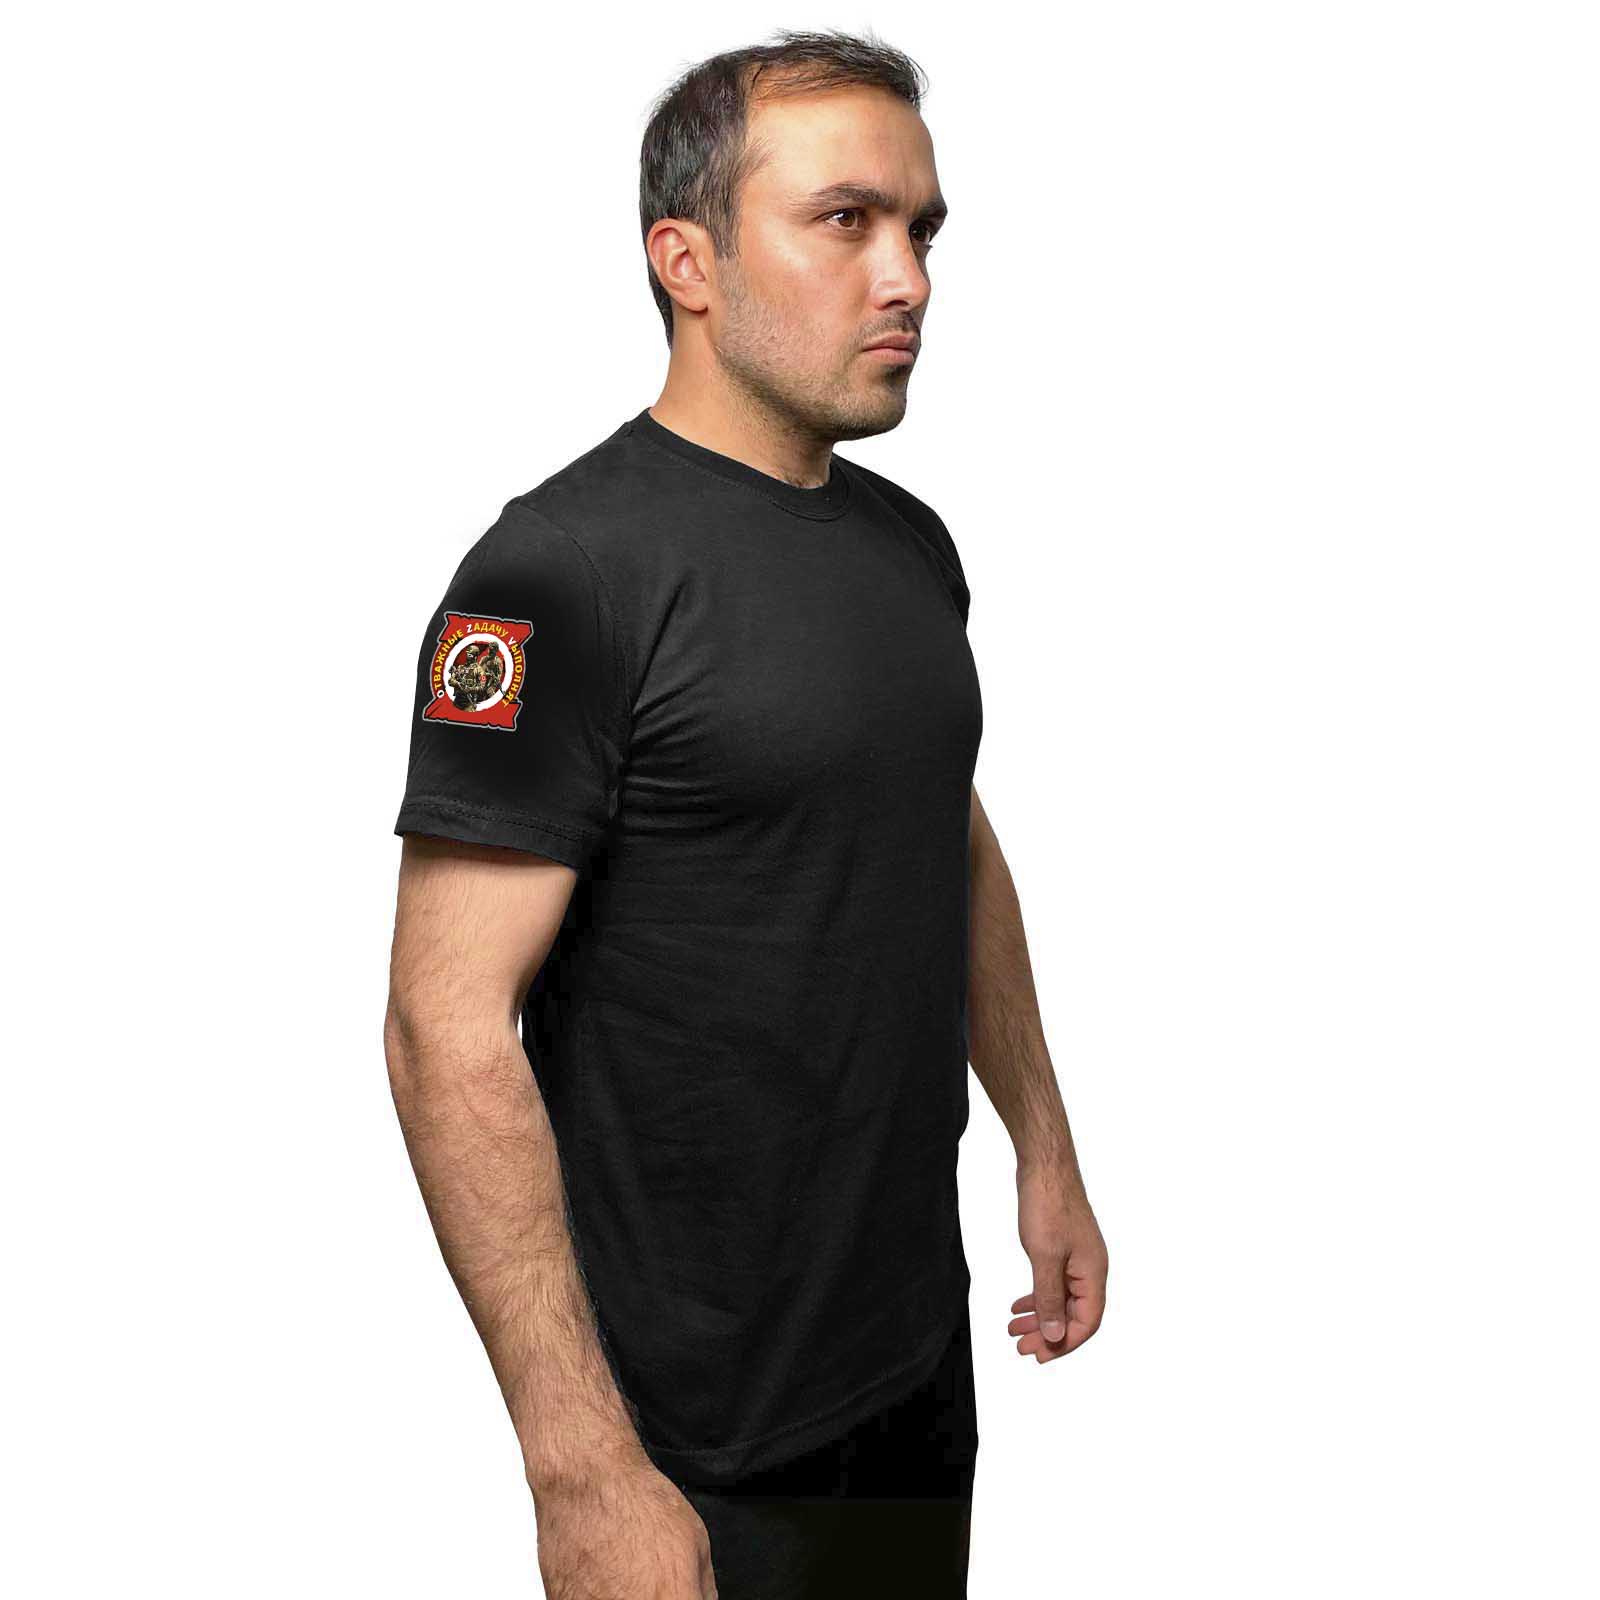 Чёрная футболка с термопринтом "Отважные Zадачу Vыполнят" на рукаве